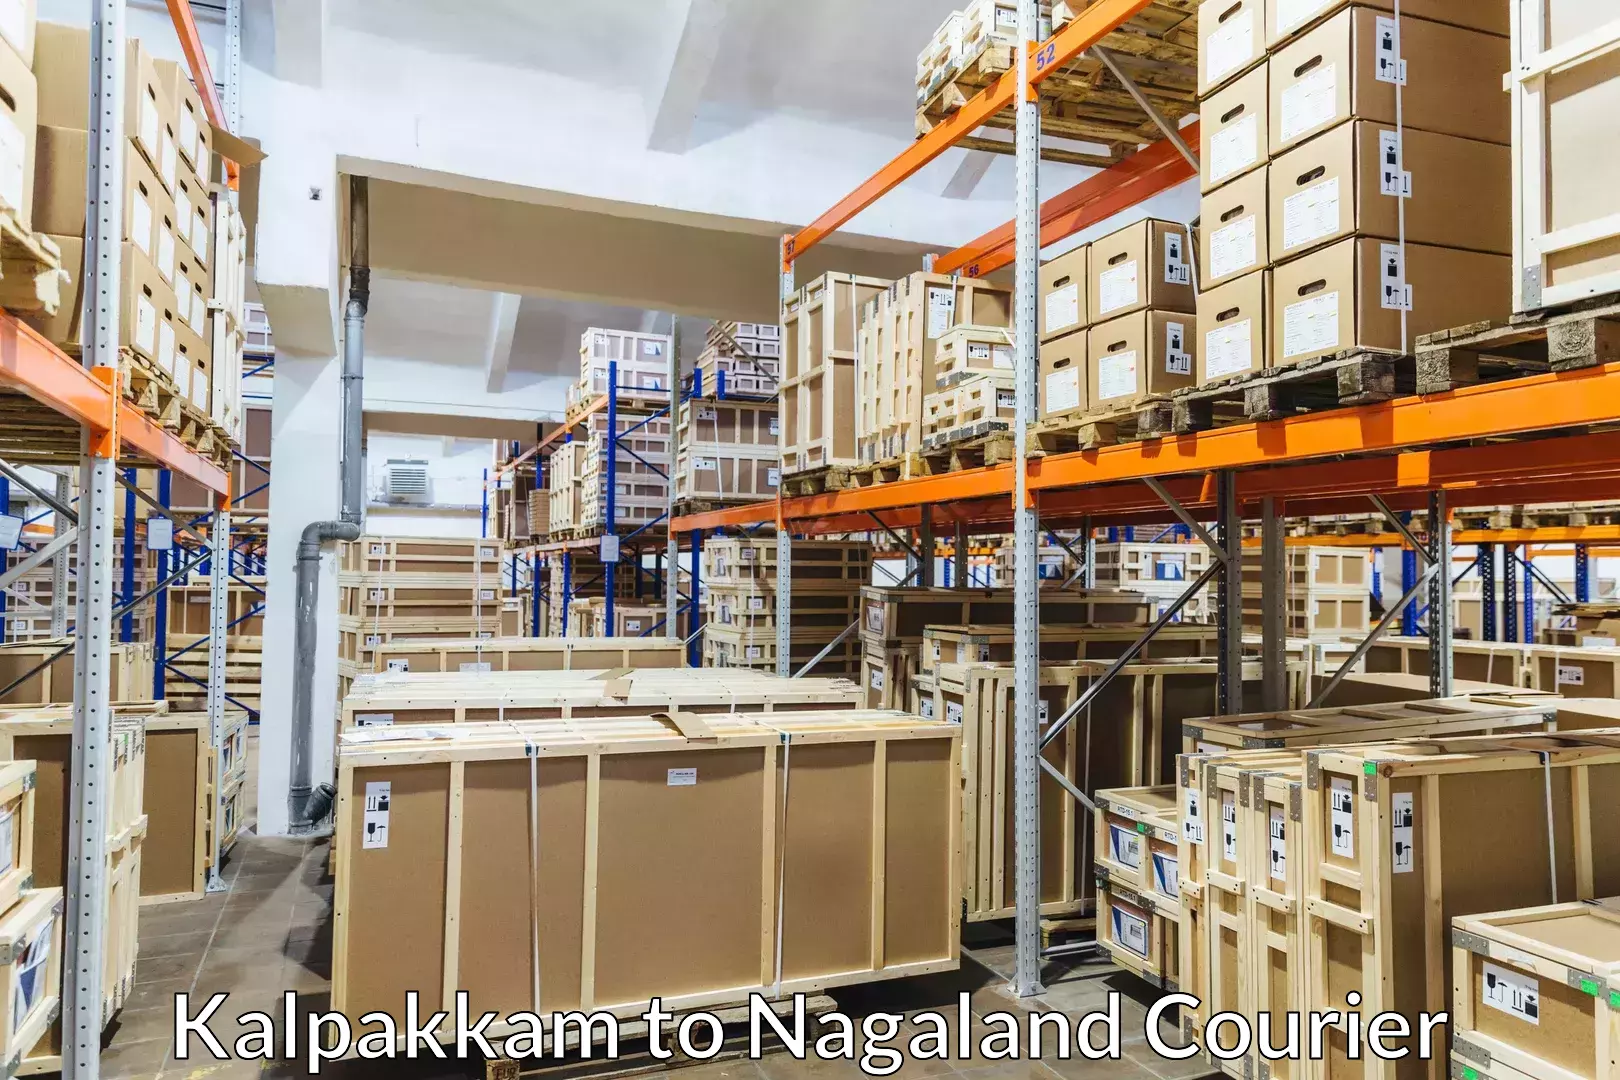 Luggage shipment tracking Kalpakkam to NIT Nagaland